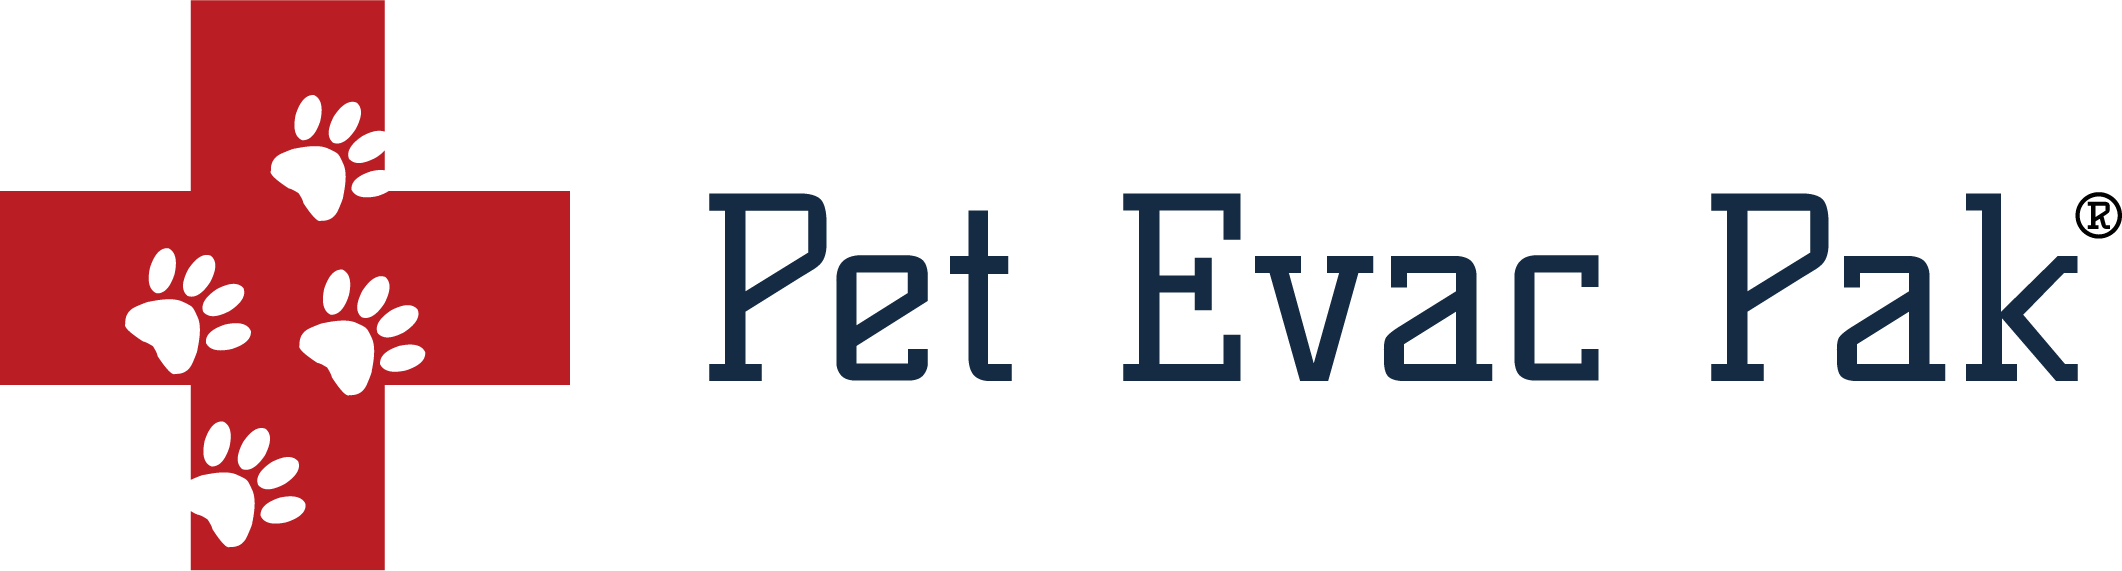 petevacpak-logo-horizontal.png